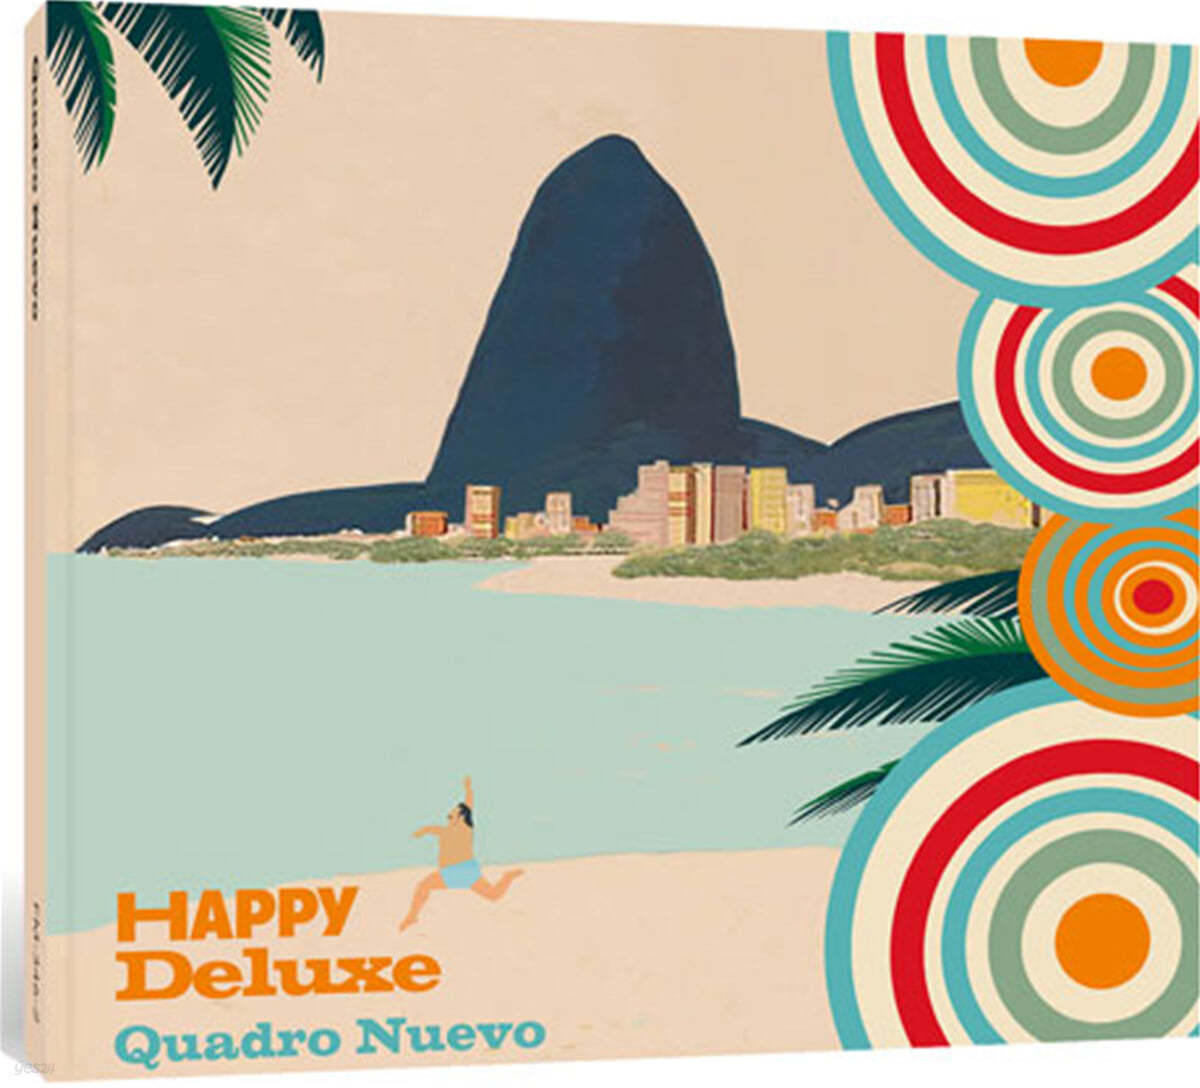 Quadro Nuevo (콰드로 누에보) - Happy Deluxe 